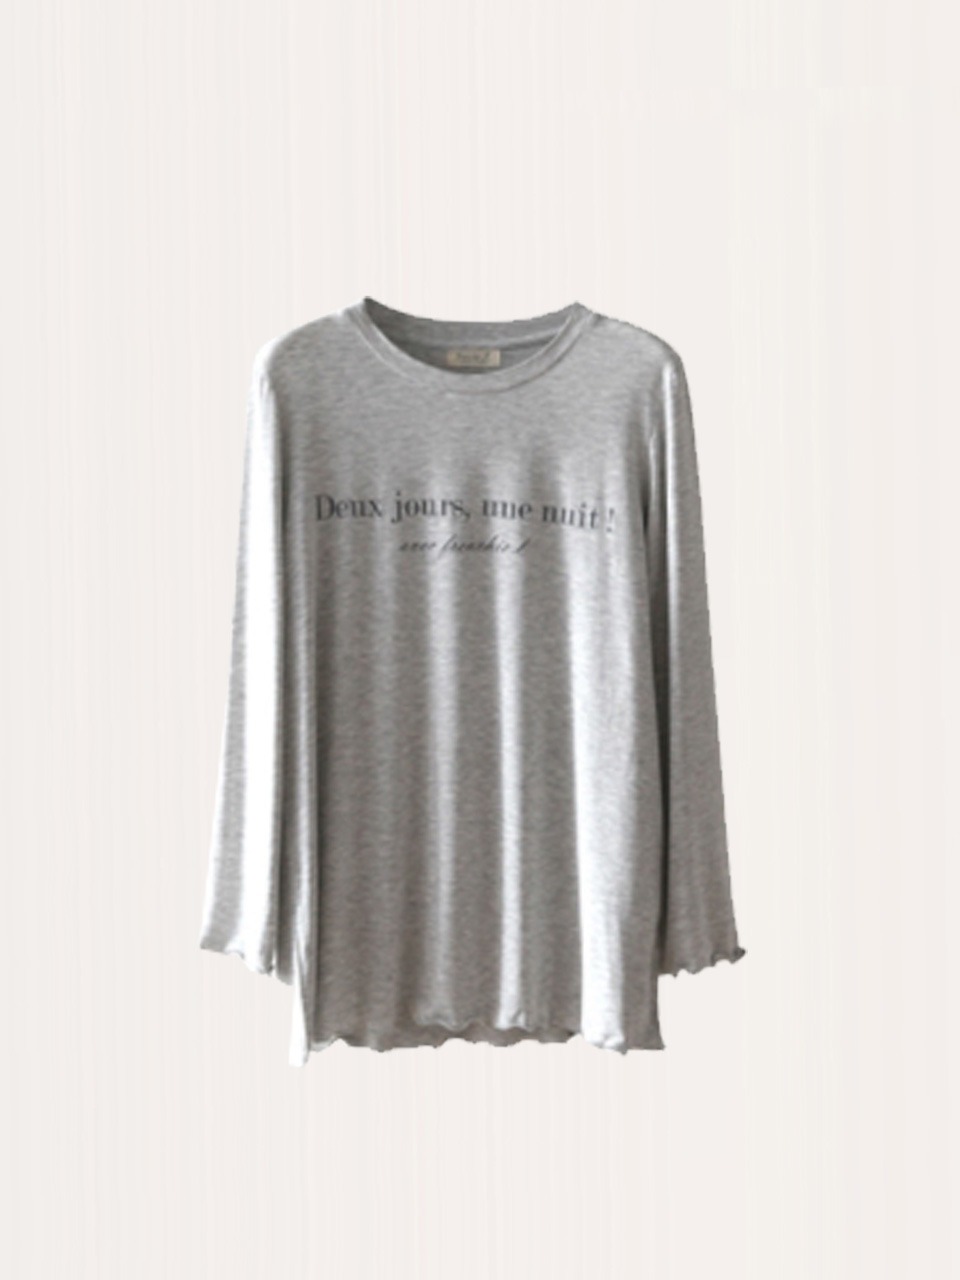 원포인트 모달 긴팔 티셔츠 - Marl gray